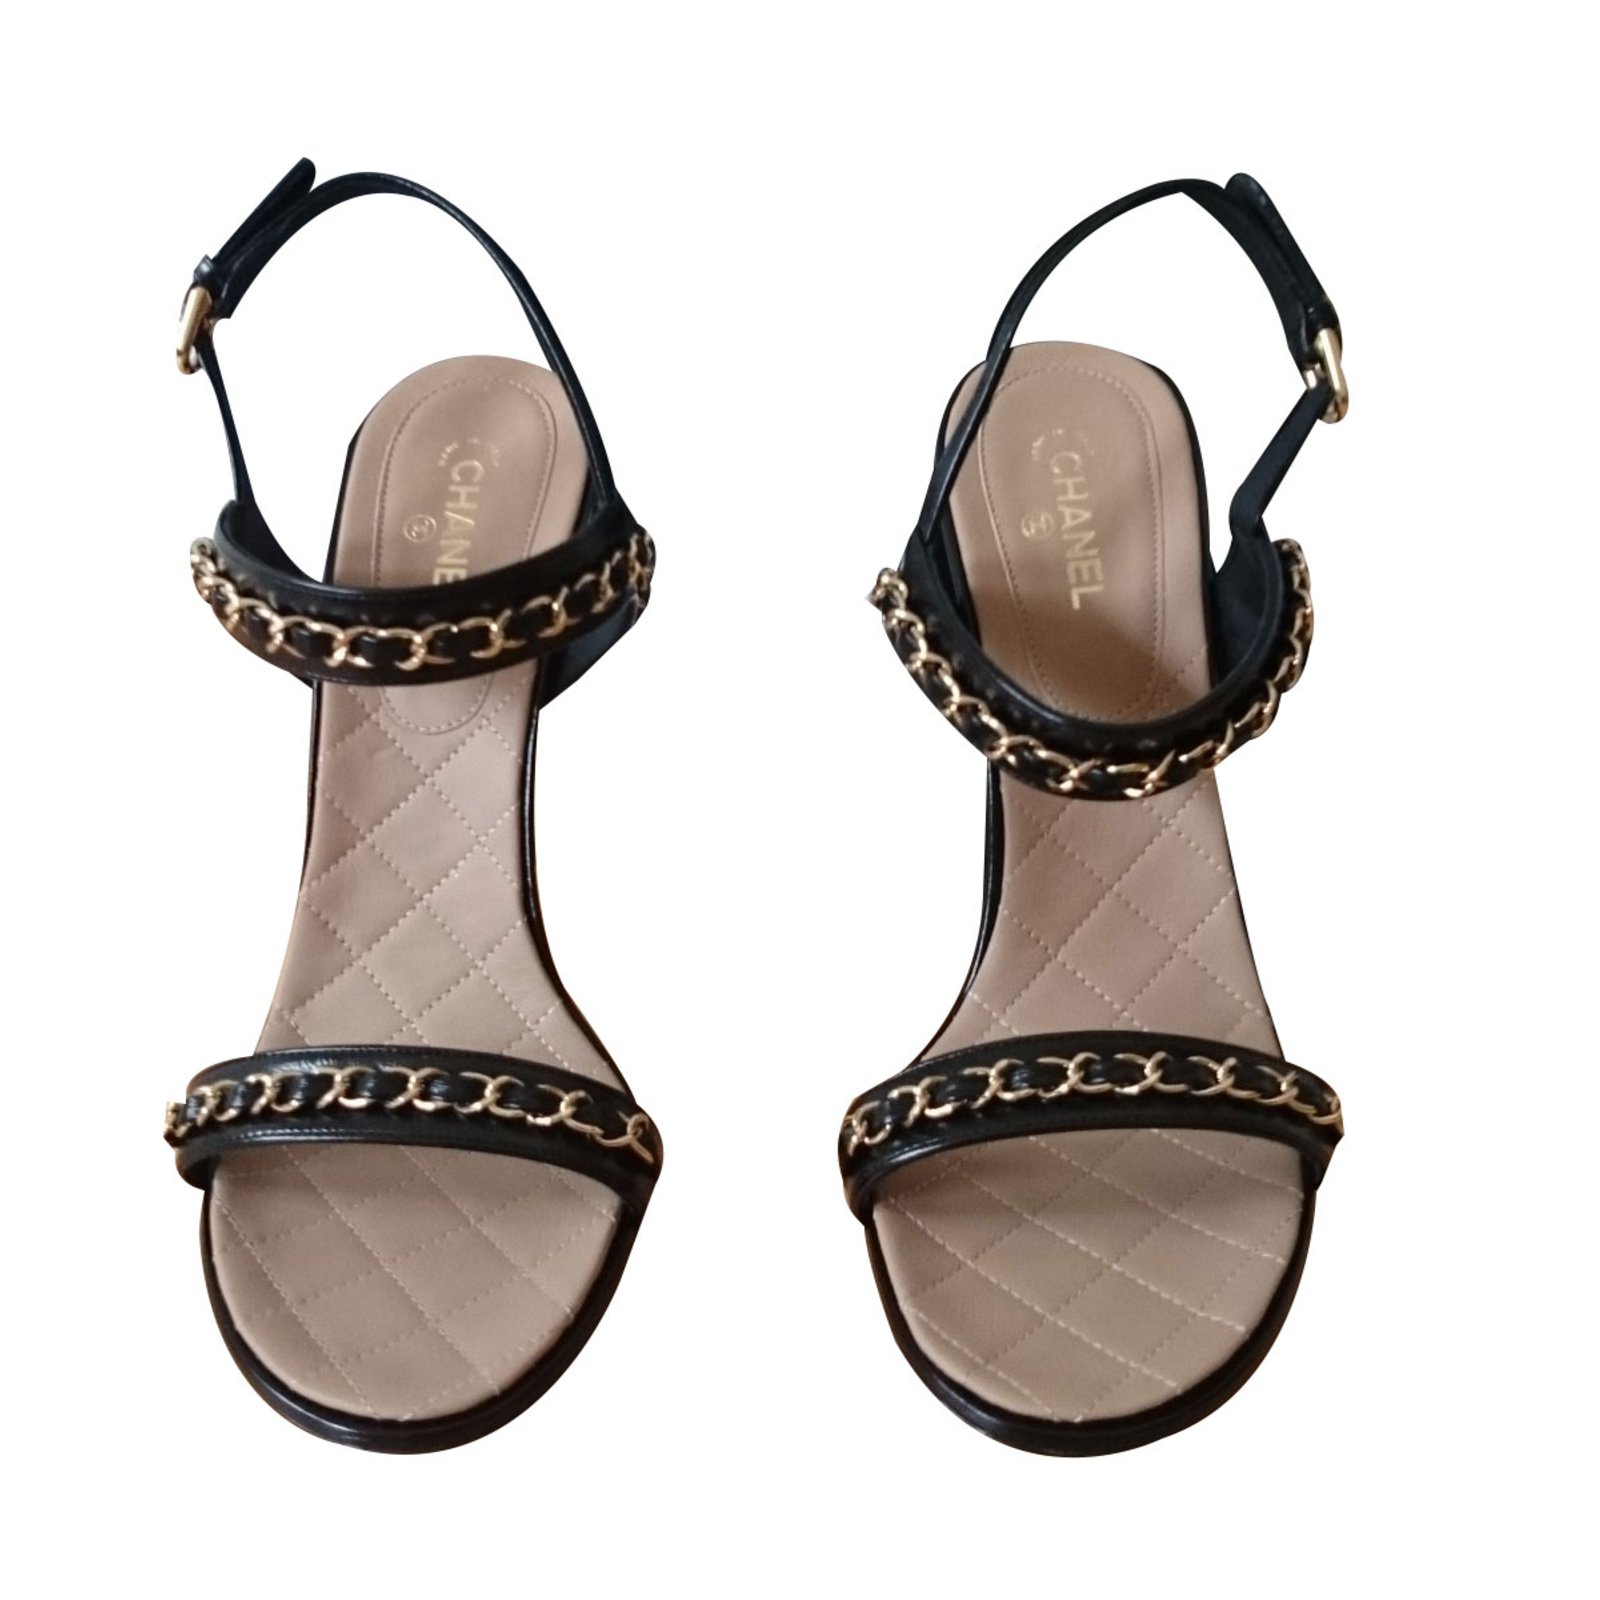 Chia sẻ hơn 80 về chanel chain sandals - Du học Akina